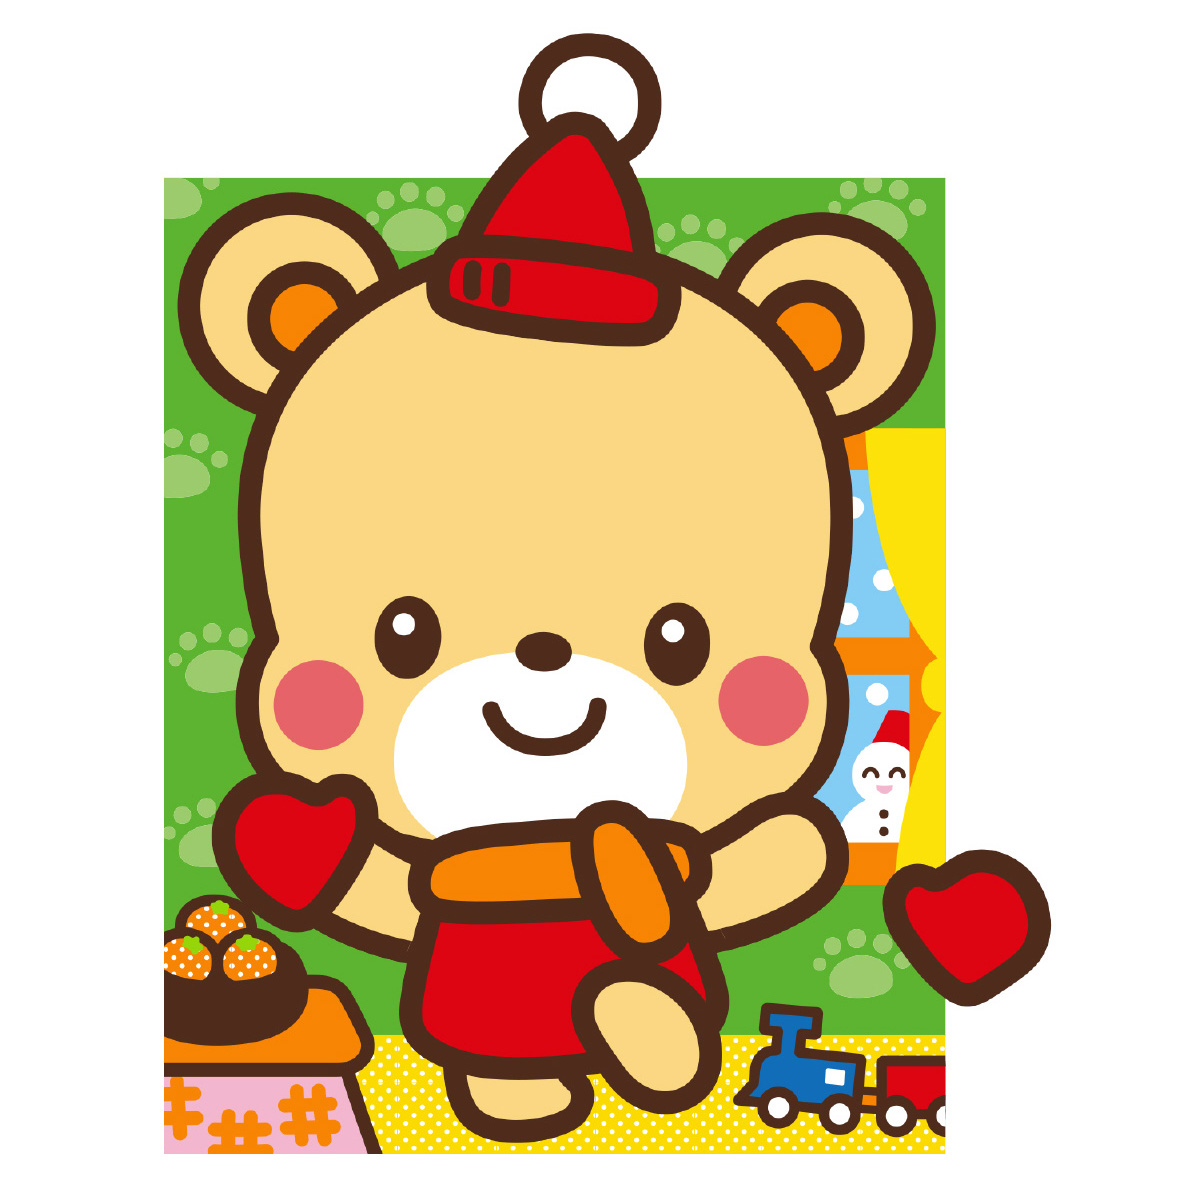 楽天市場 どうぶつ ふくわらい くま 福笑い クマ 熊 動物 かわいい イラスト 幼児 キッズ 子供 知育玩具 正月 ゲーム おもちゃ 室内 クリスマスプレゼント ルーペスタジオ